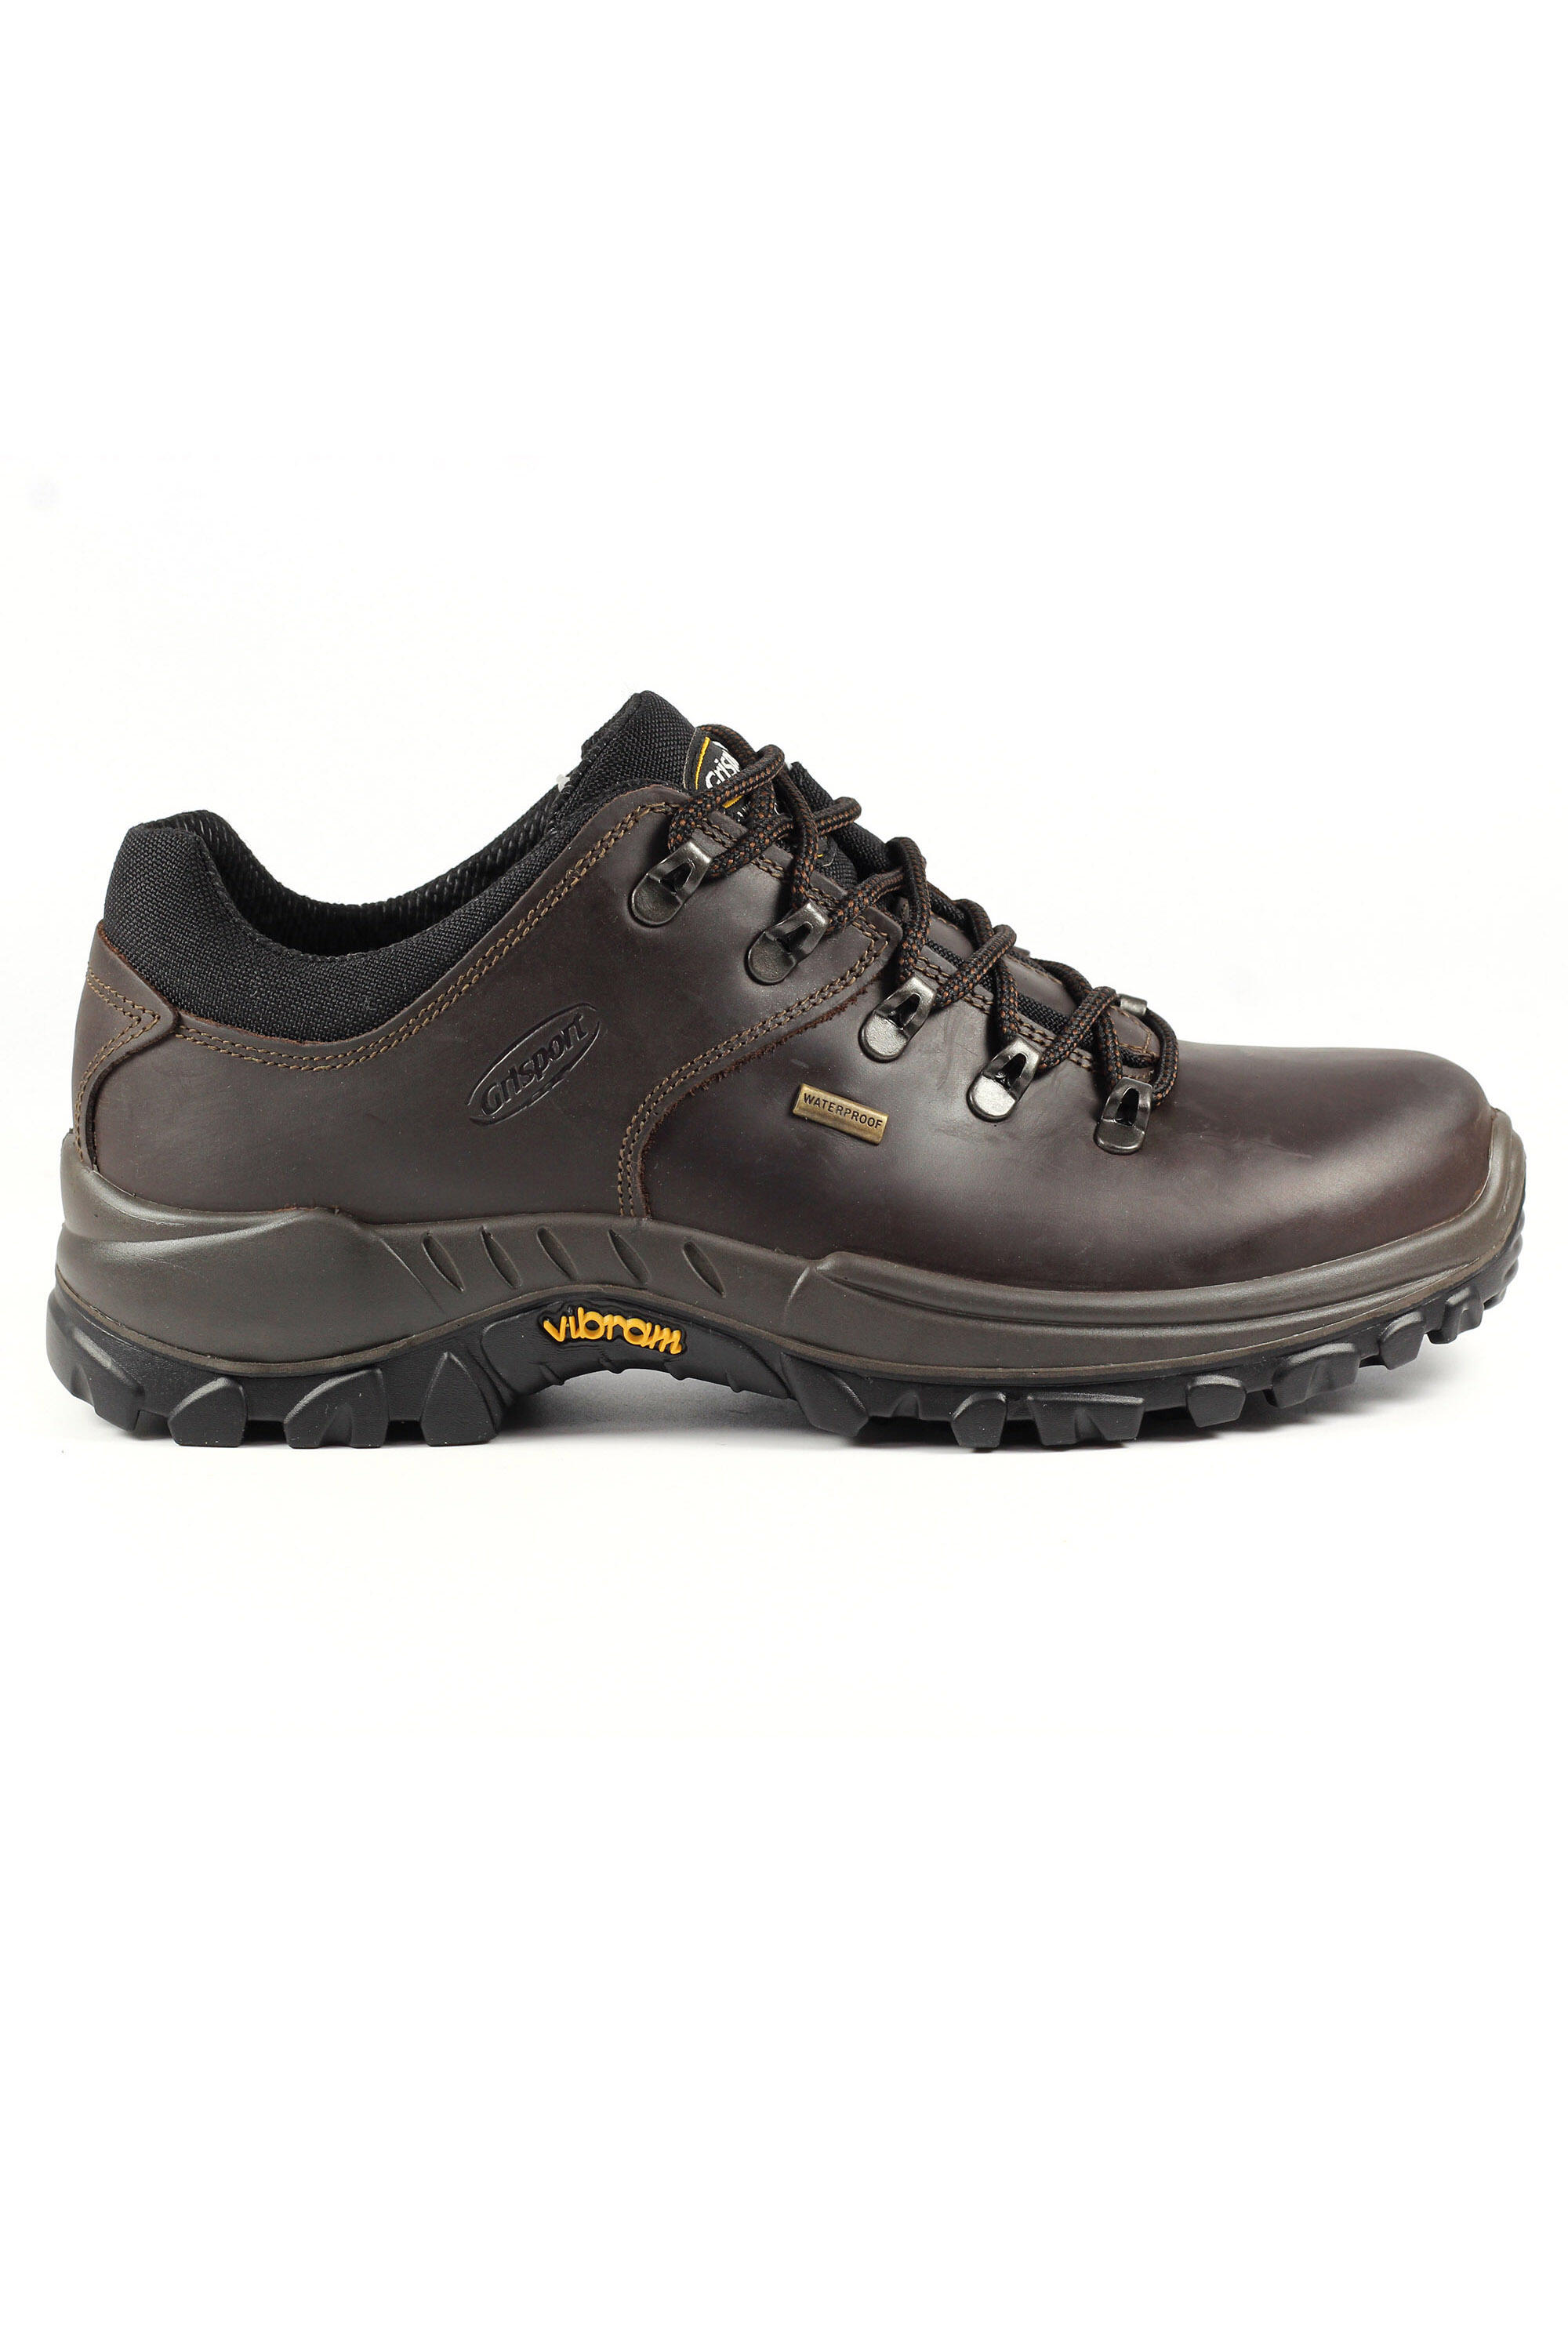 Dartmoor Brown Waterproof Walking Shoes 2/5